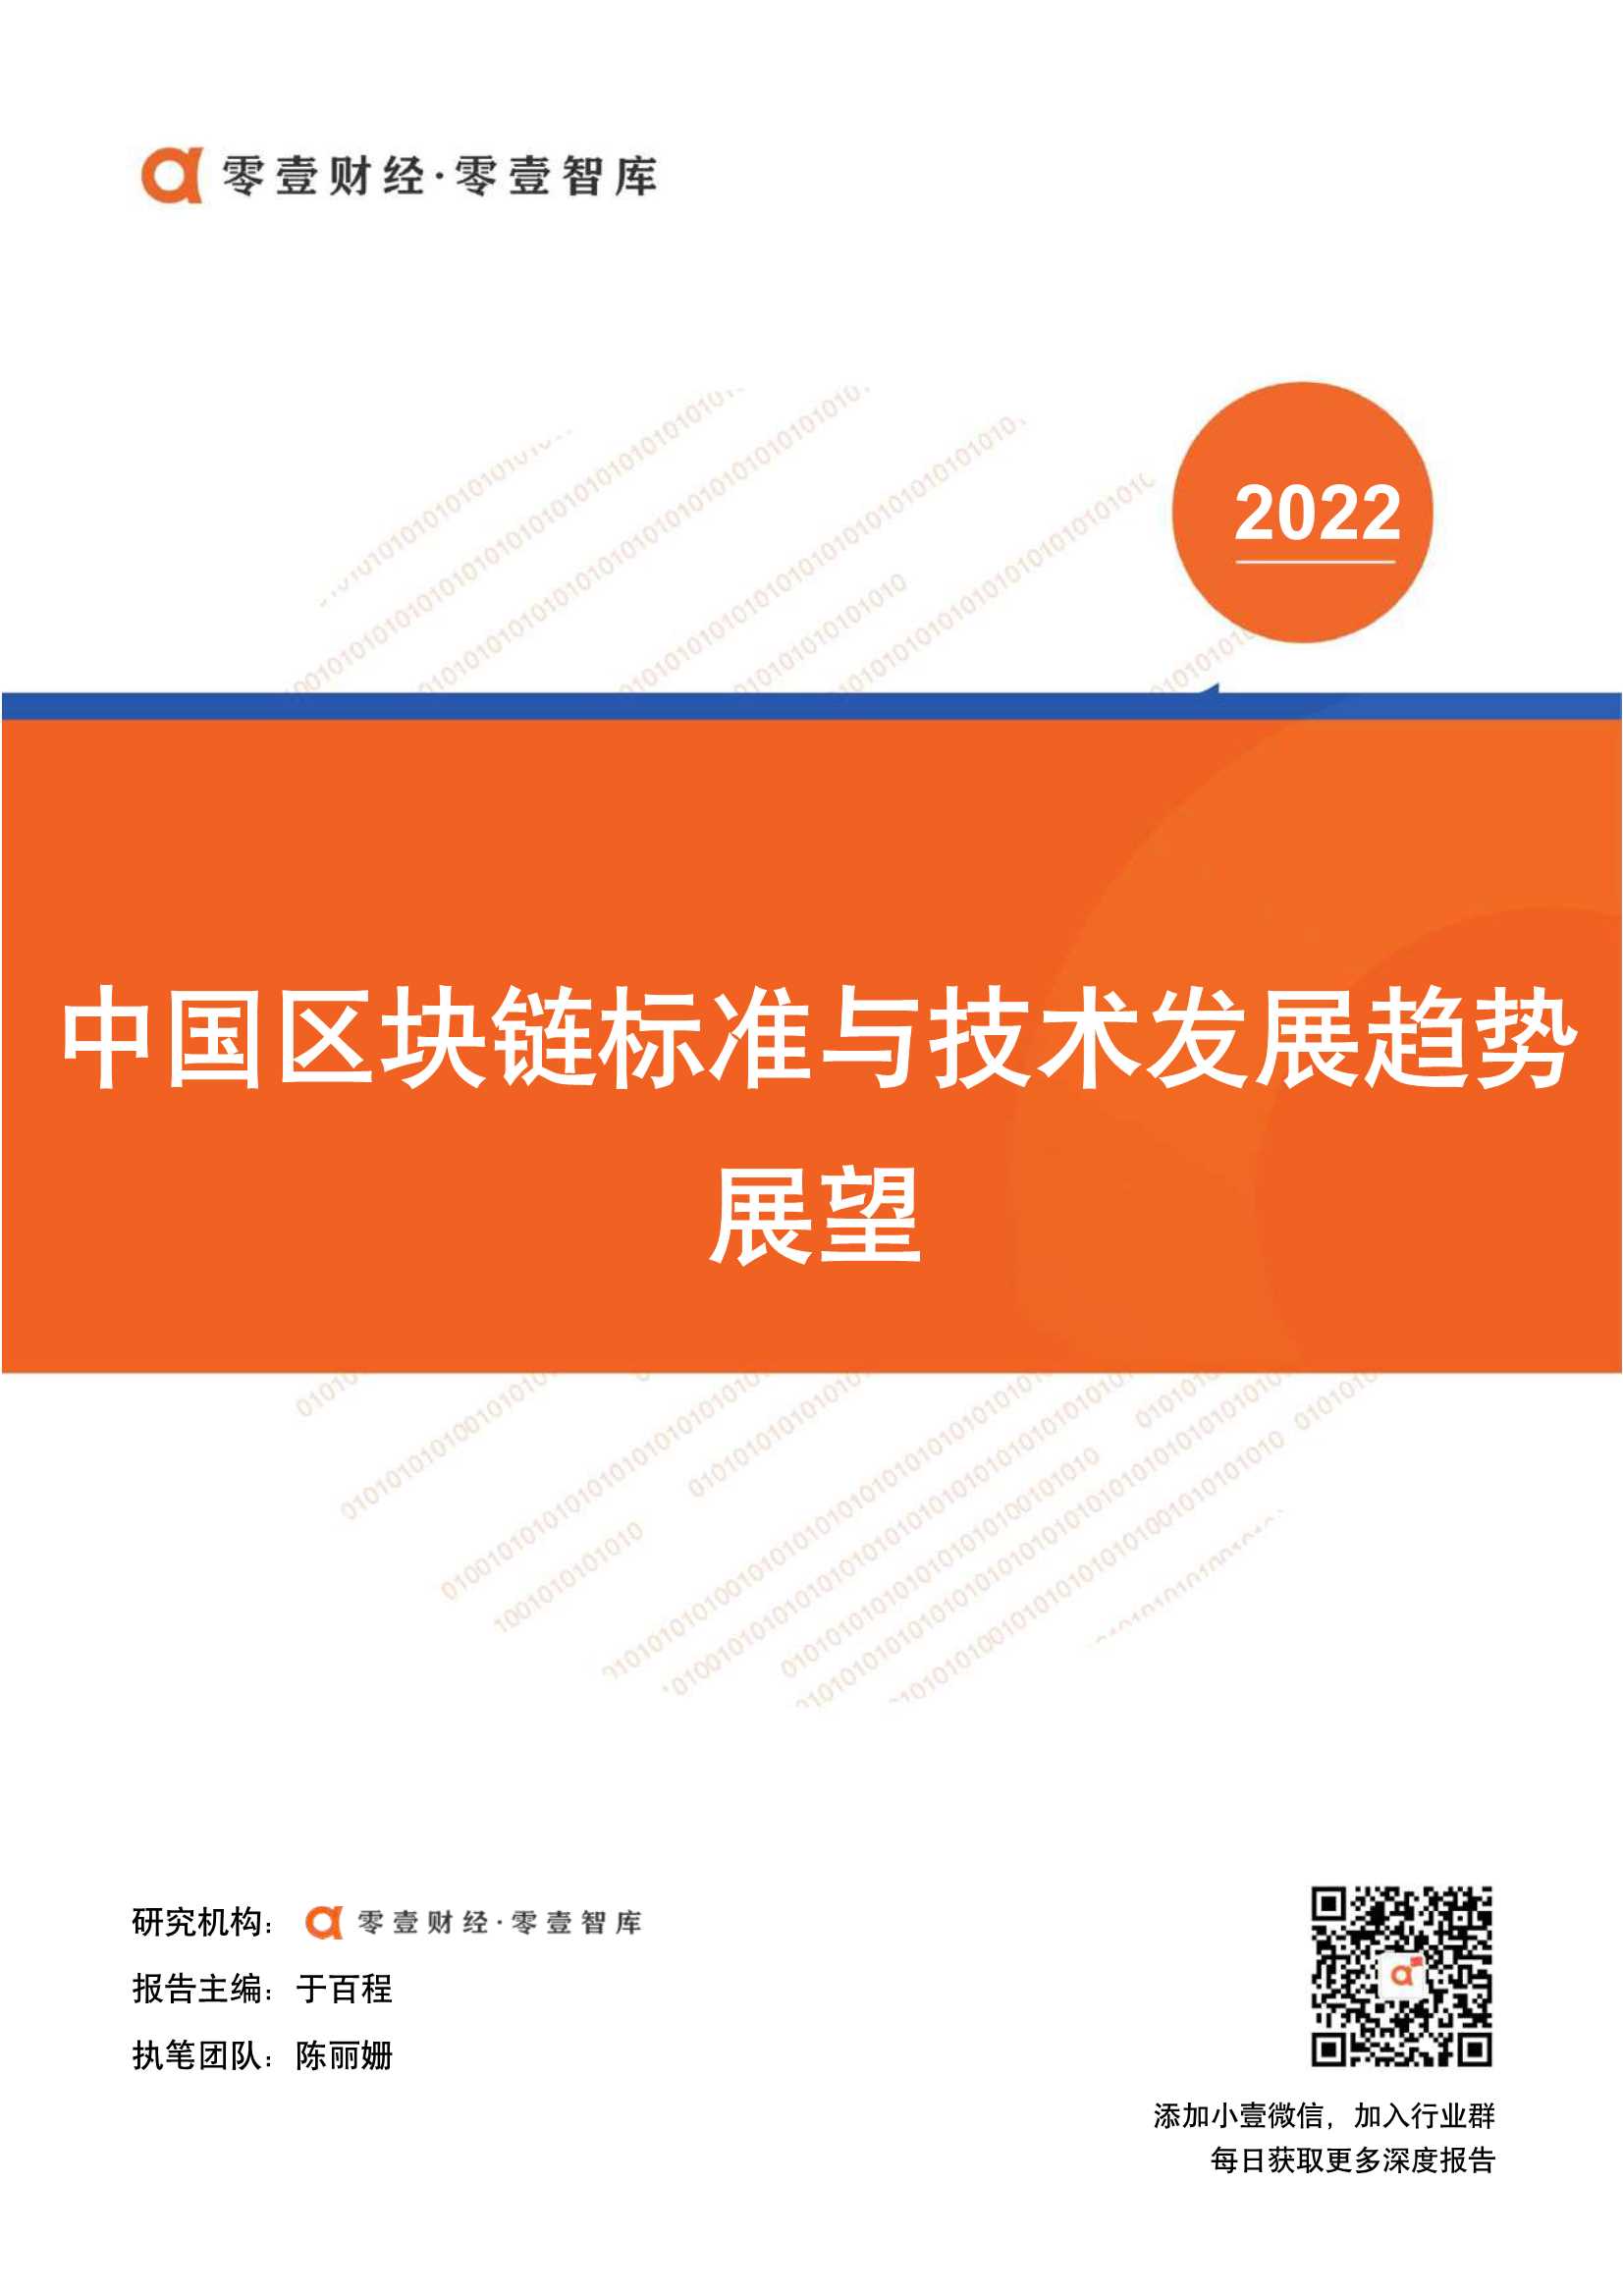 零壹智库-中国区块链标准与技术发展趋势展望-2022.02-16页